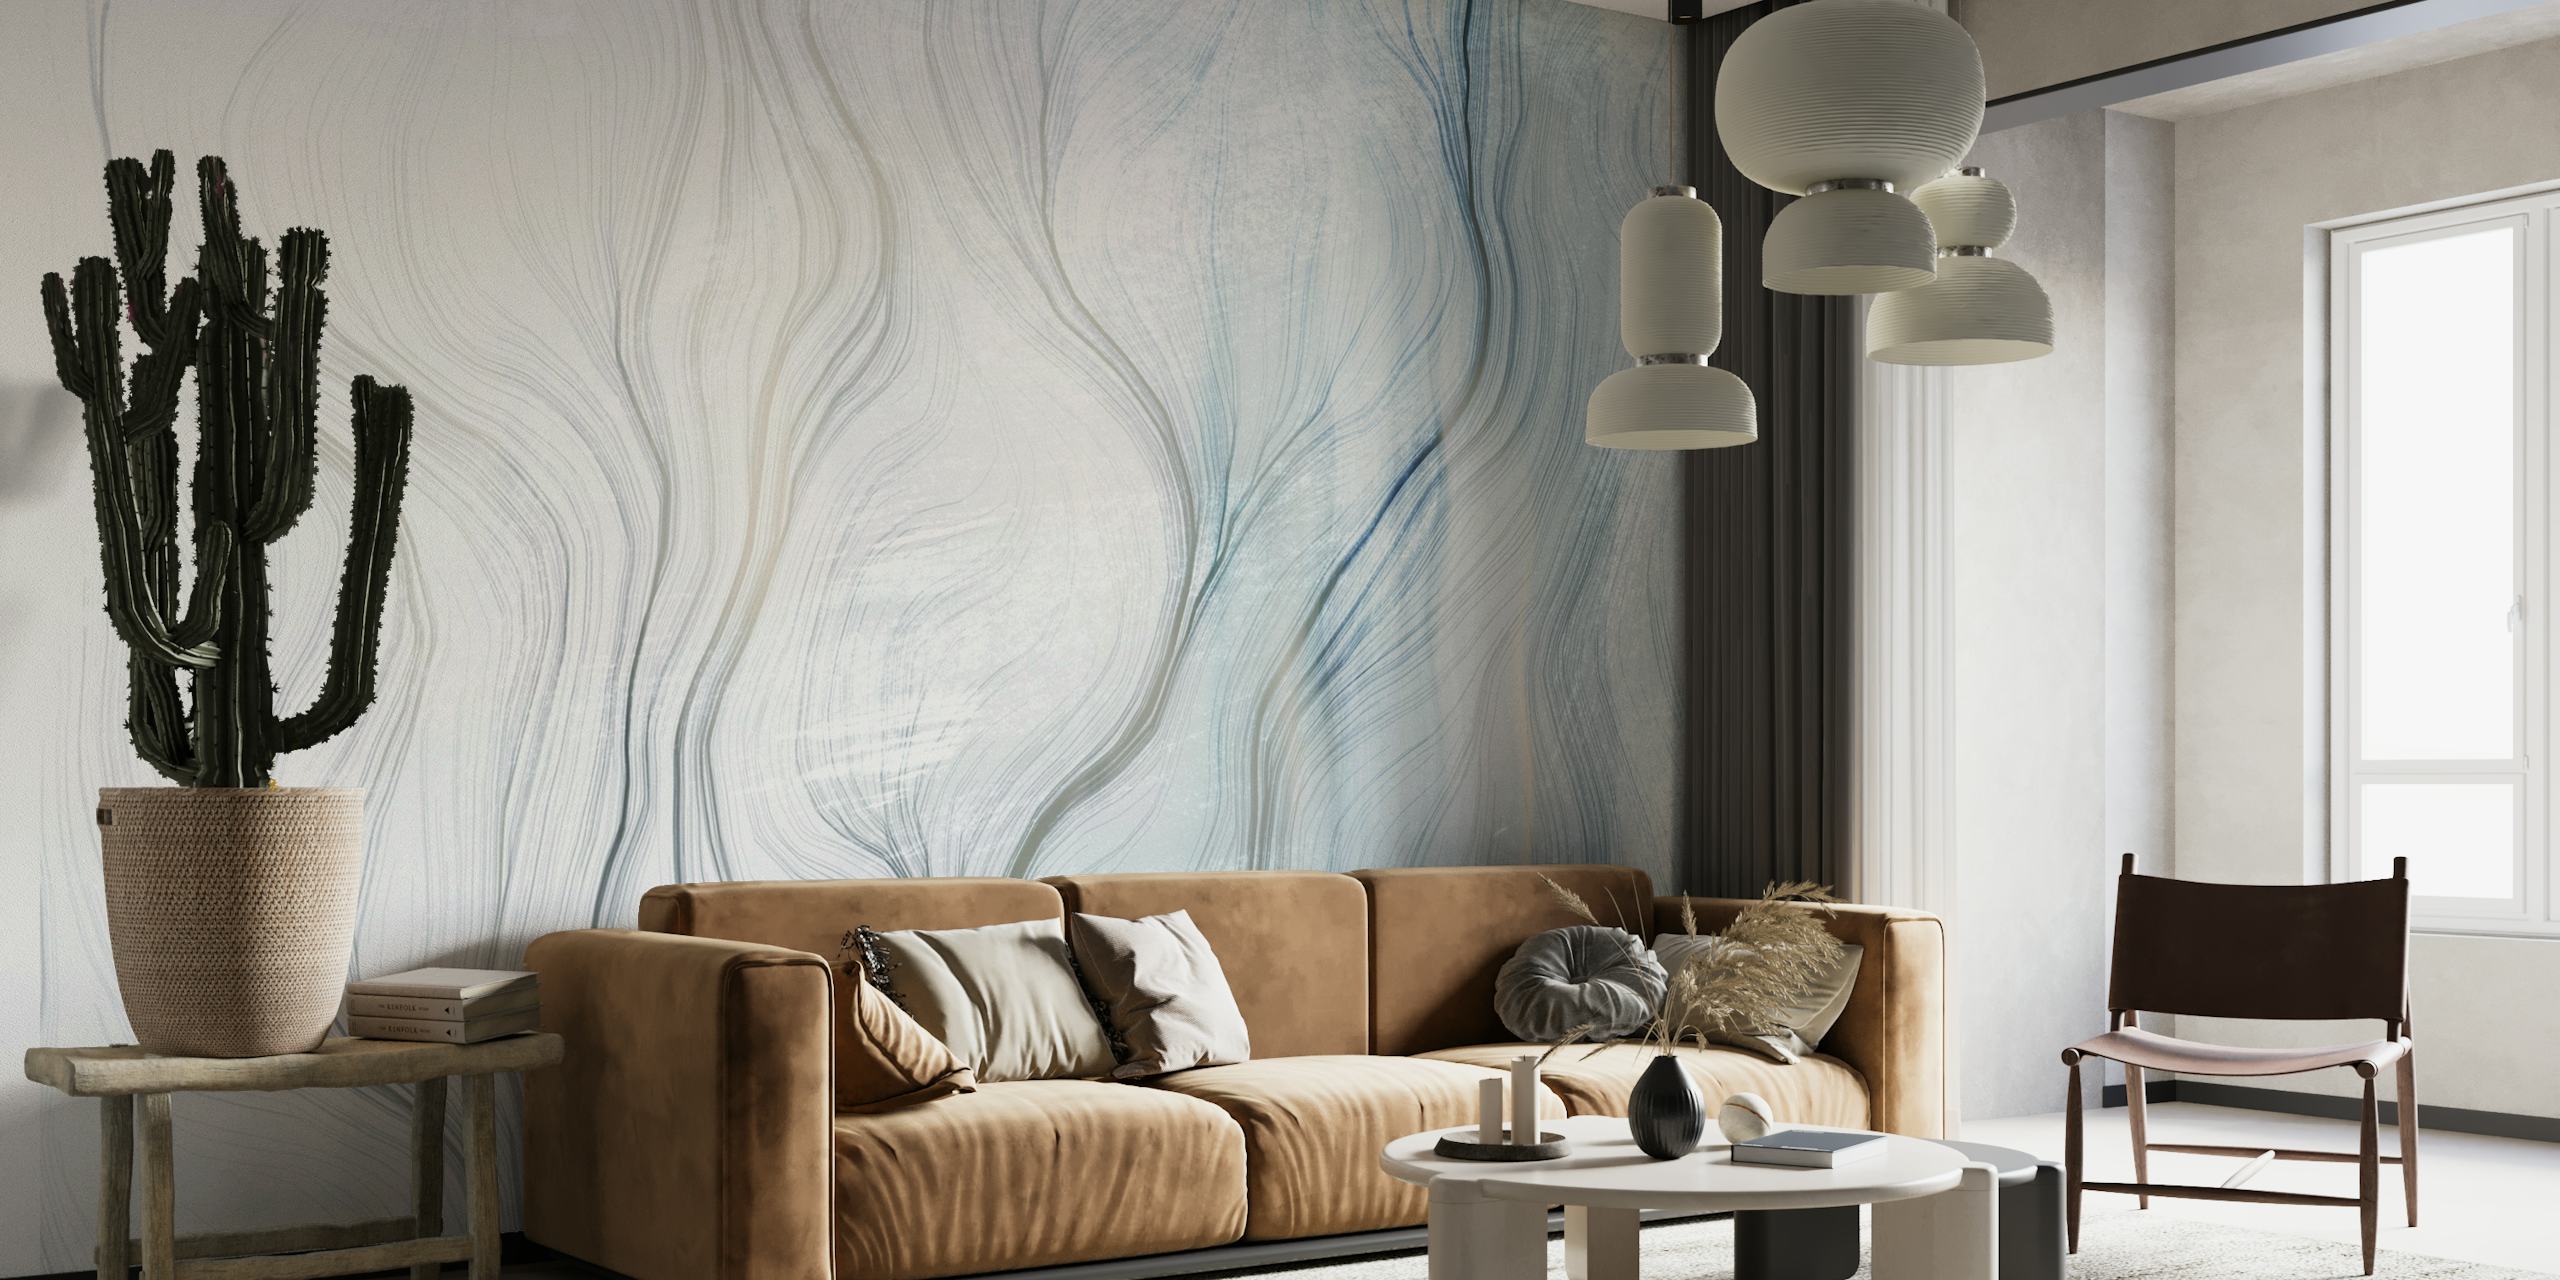 Mural de pared abstracto con curvas suaves y tonos degradados de azul y gris, que crean un ambiente tranquilo